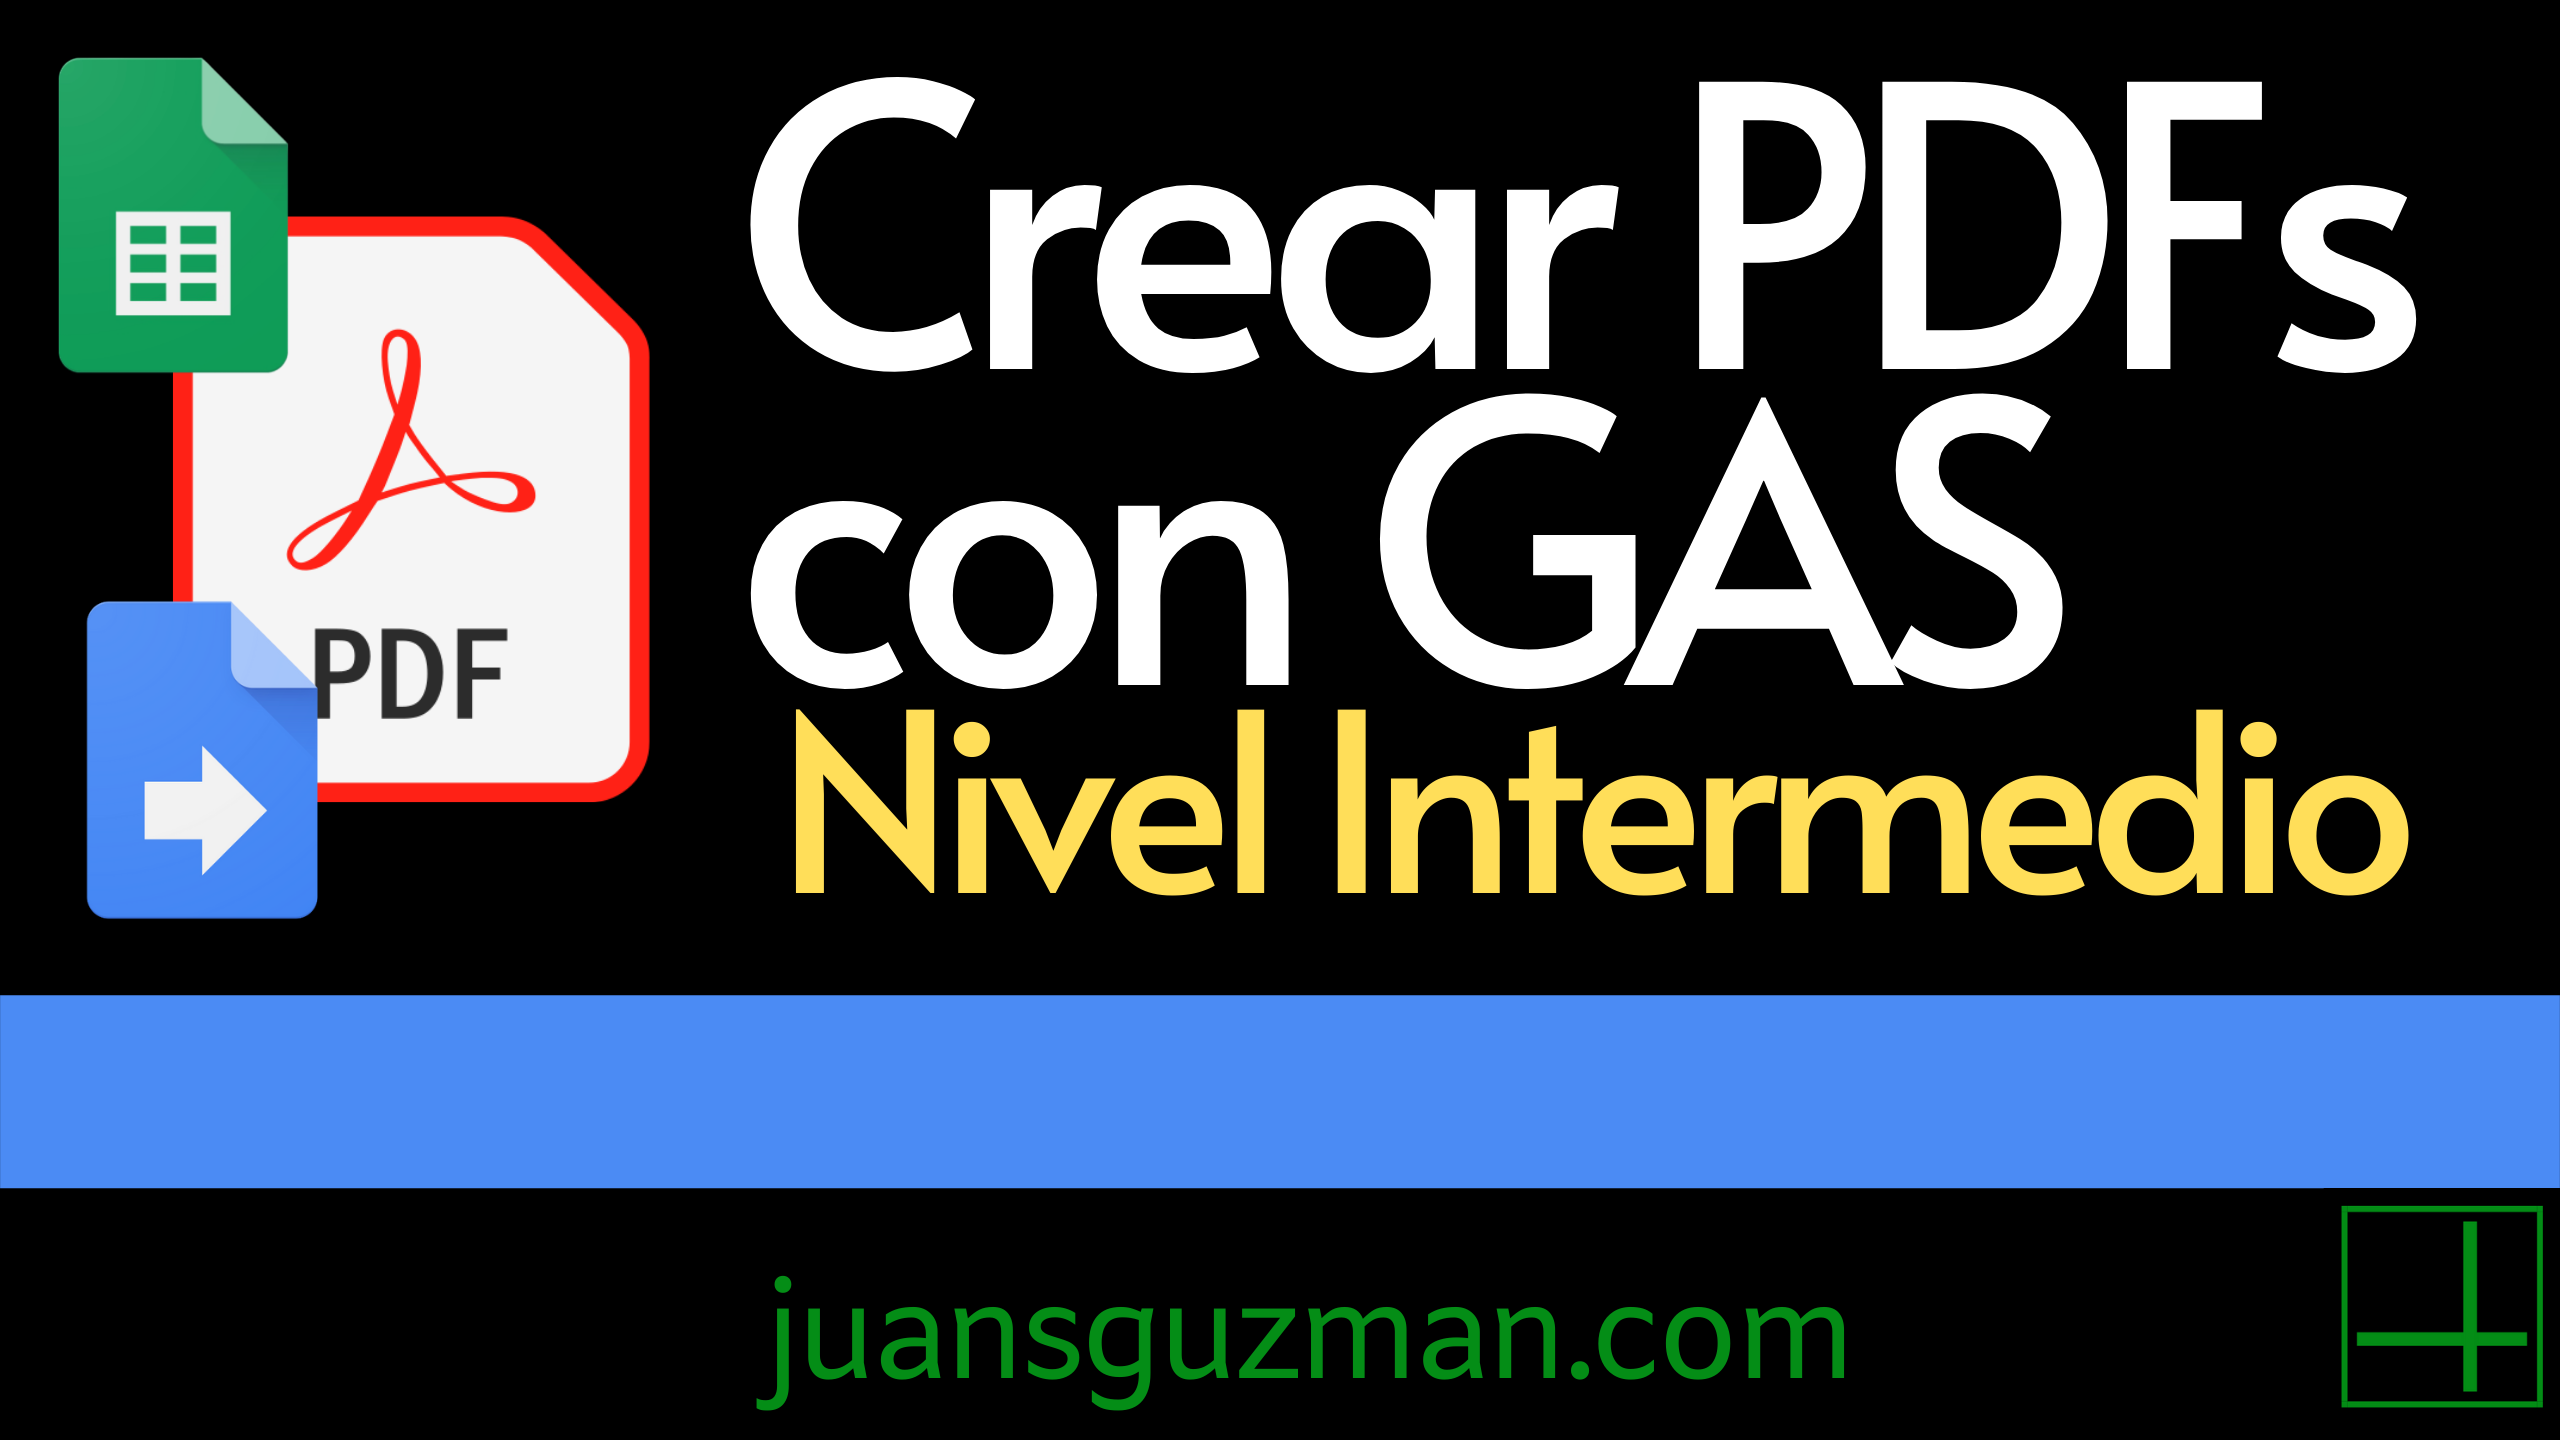 Crear PDFs con GAS - Nievl Intermedio